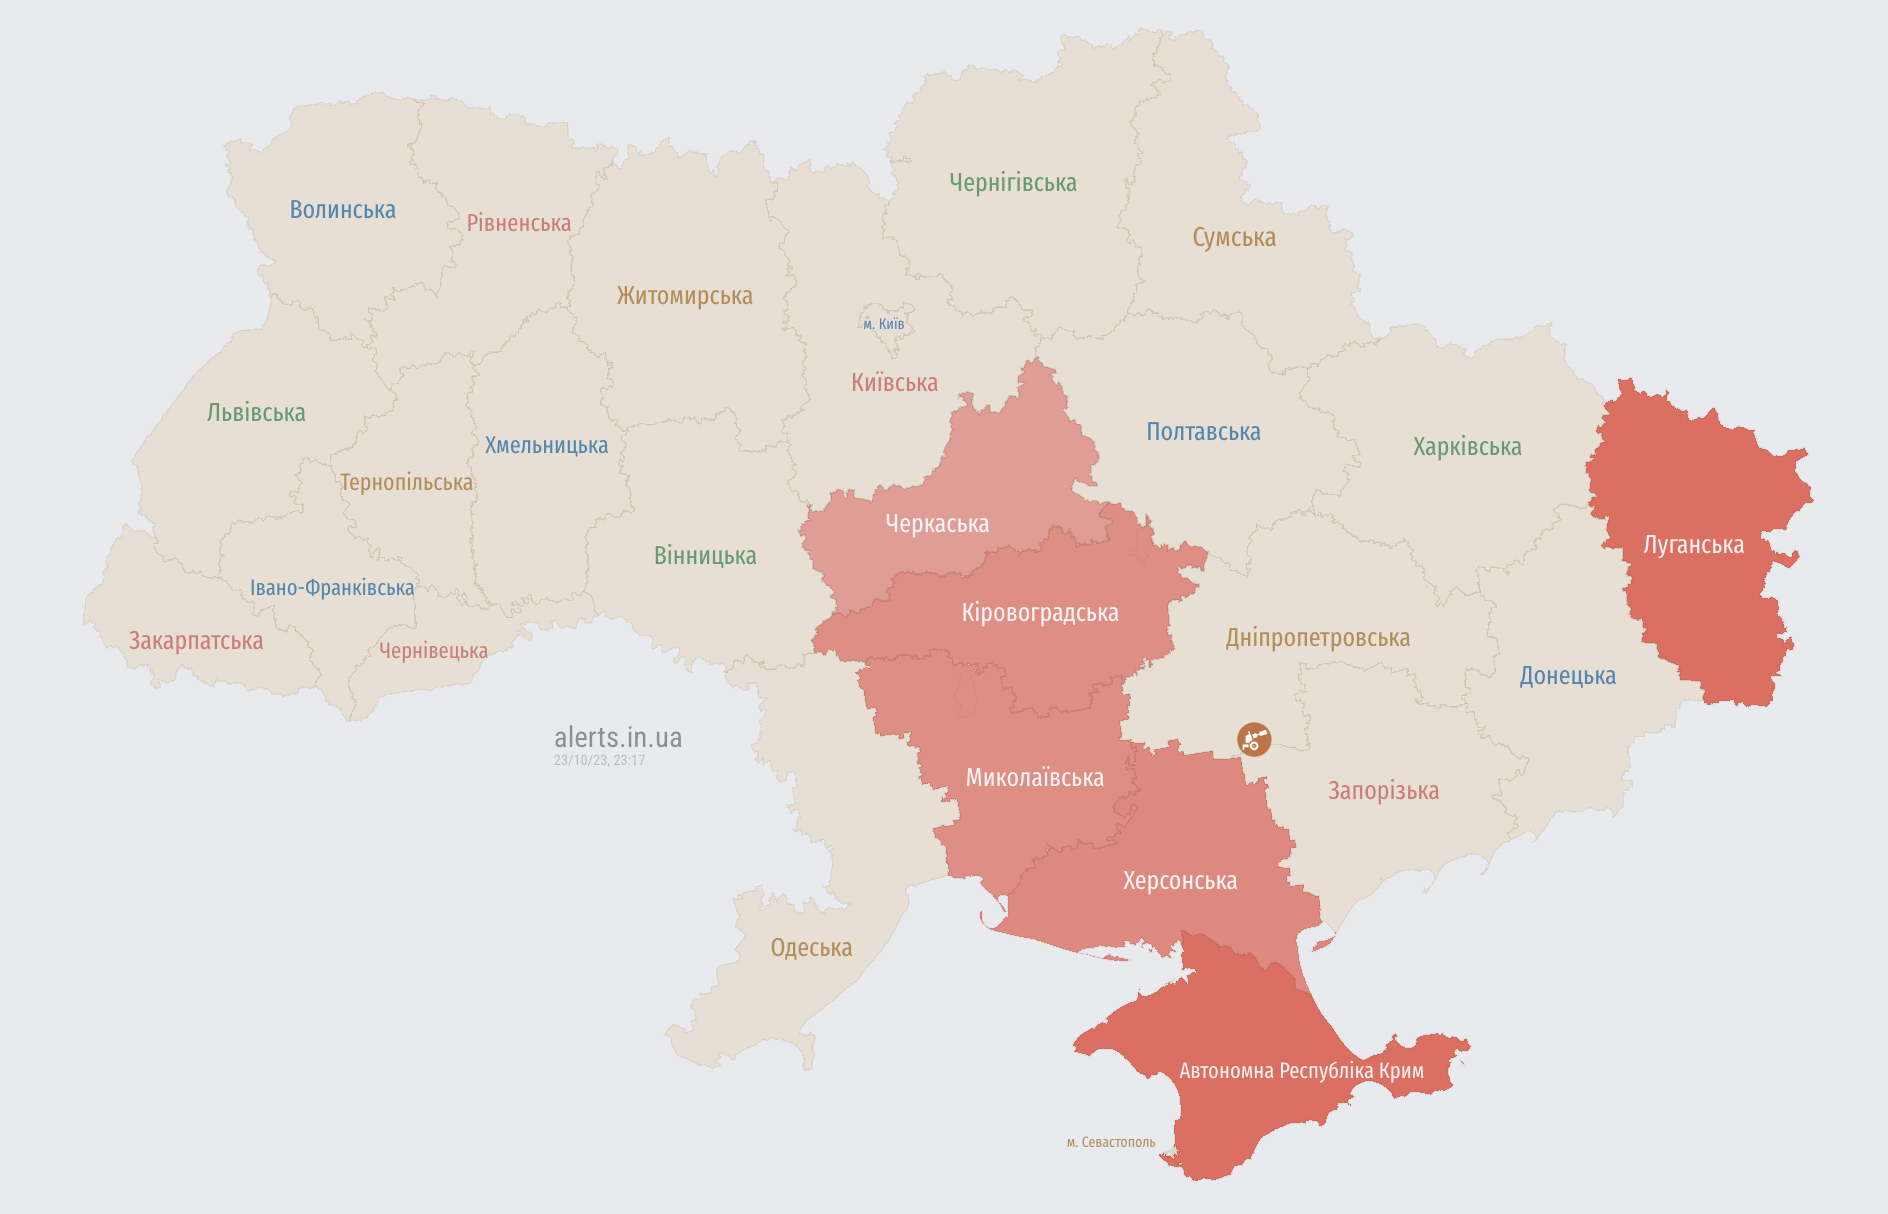 Воздушная тревога в ряде областей Украины: где есть угроза ударных БПЛА 